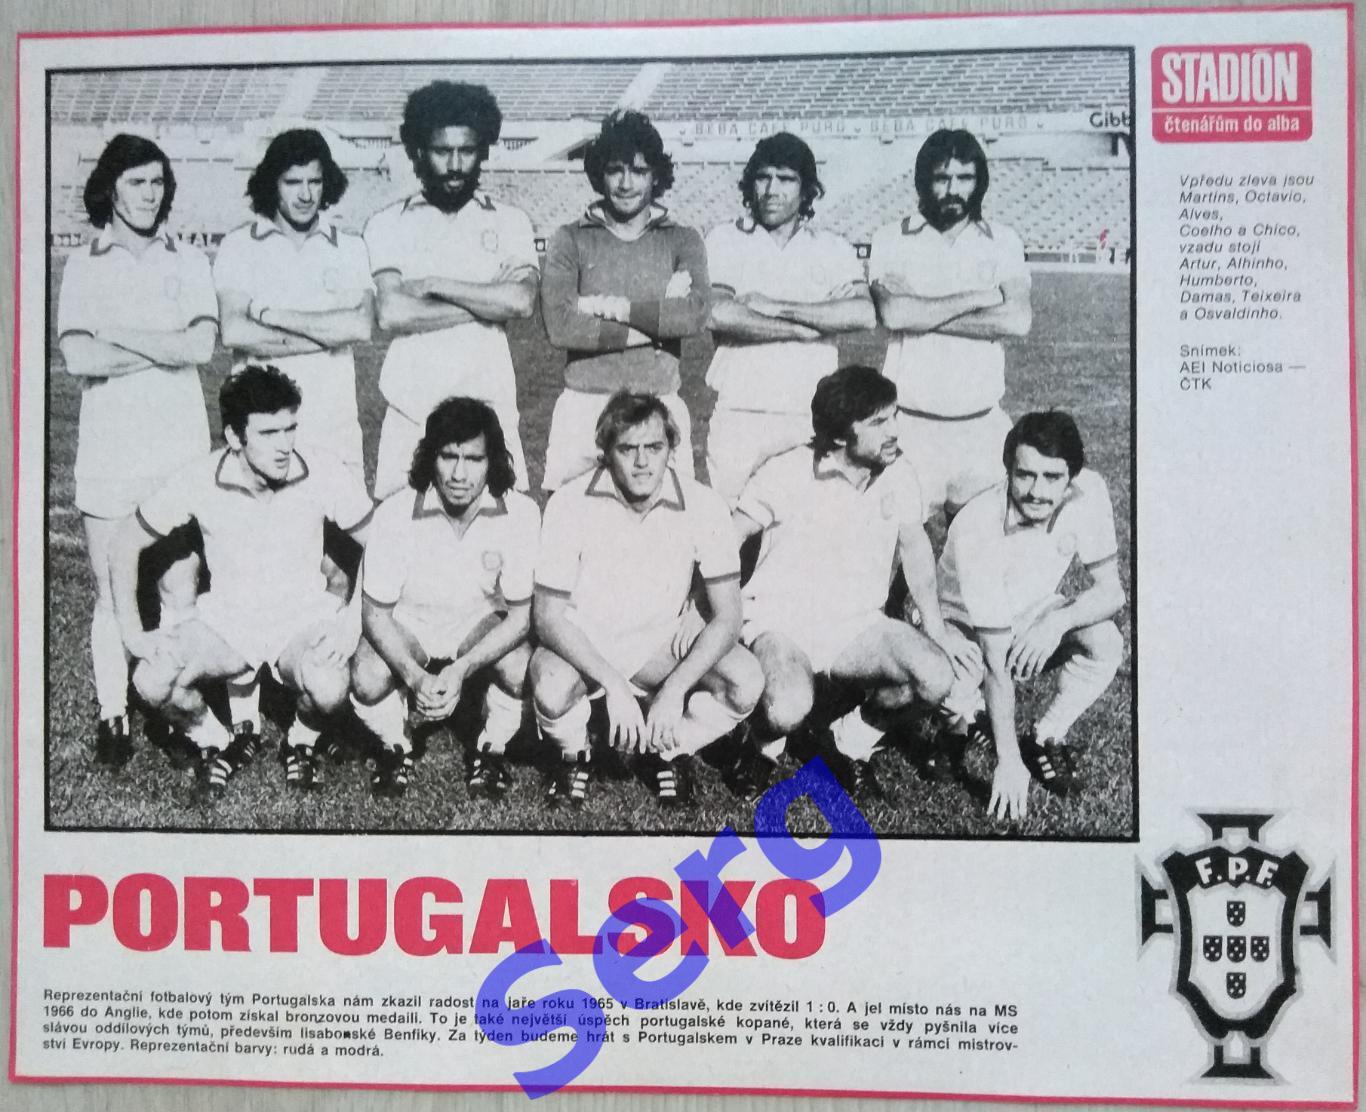 Постер сборная Португалия из журнала Стадион/Stadion